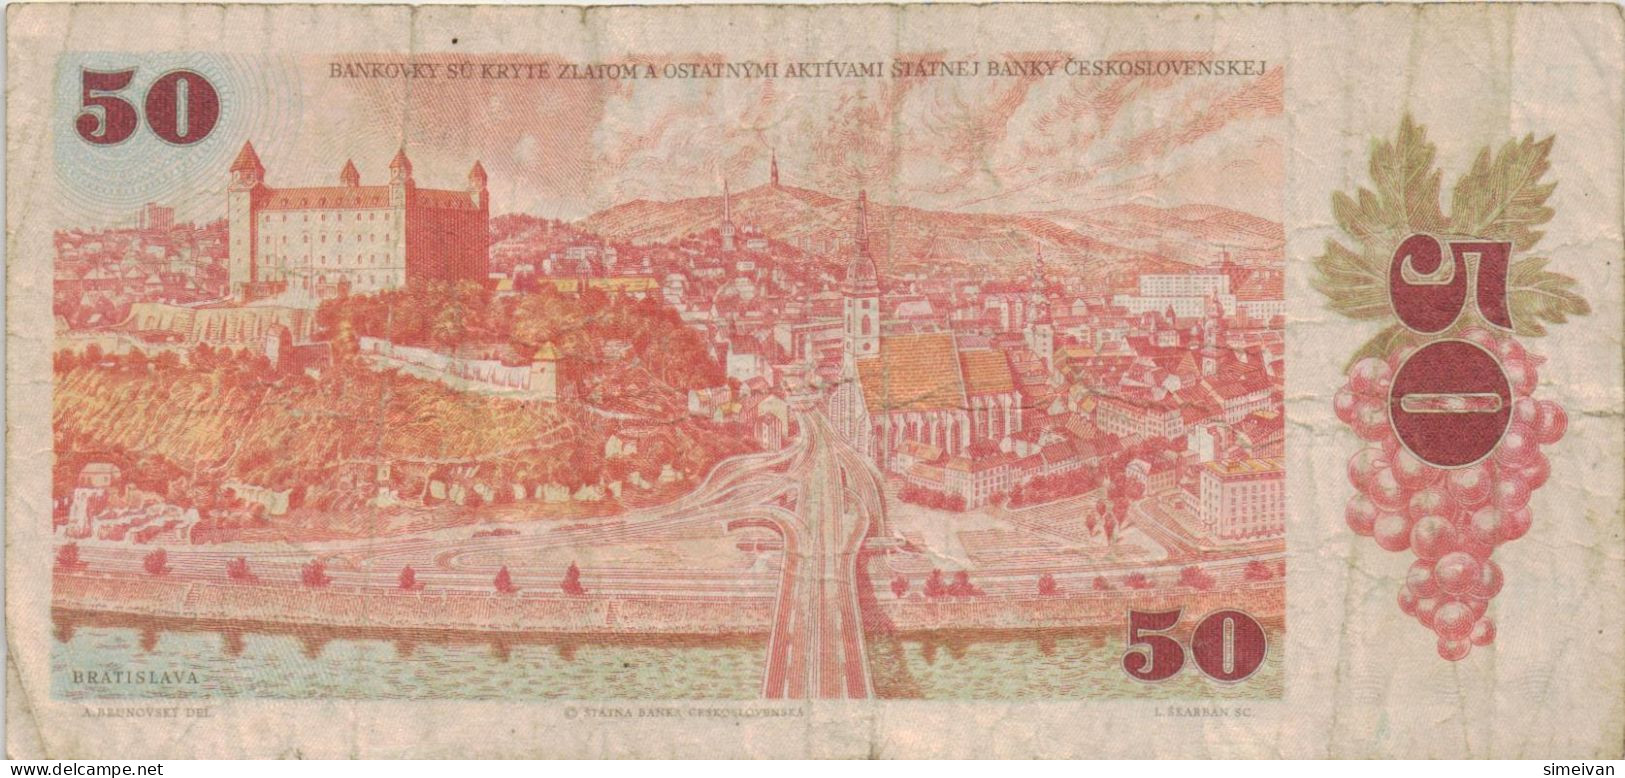 Czechoslovakia 50 Korun 1987 P-96a Banknote Europe Currency Tchécoslovaquie Tschechoslowakei #5260 - Czechoslovakia